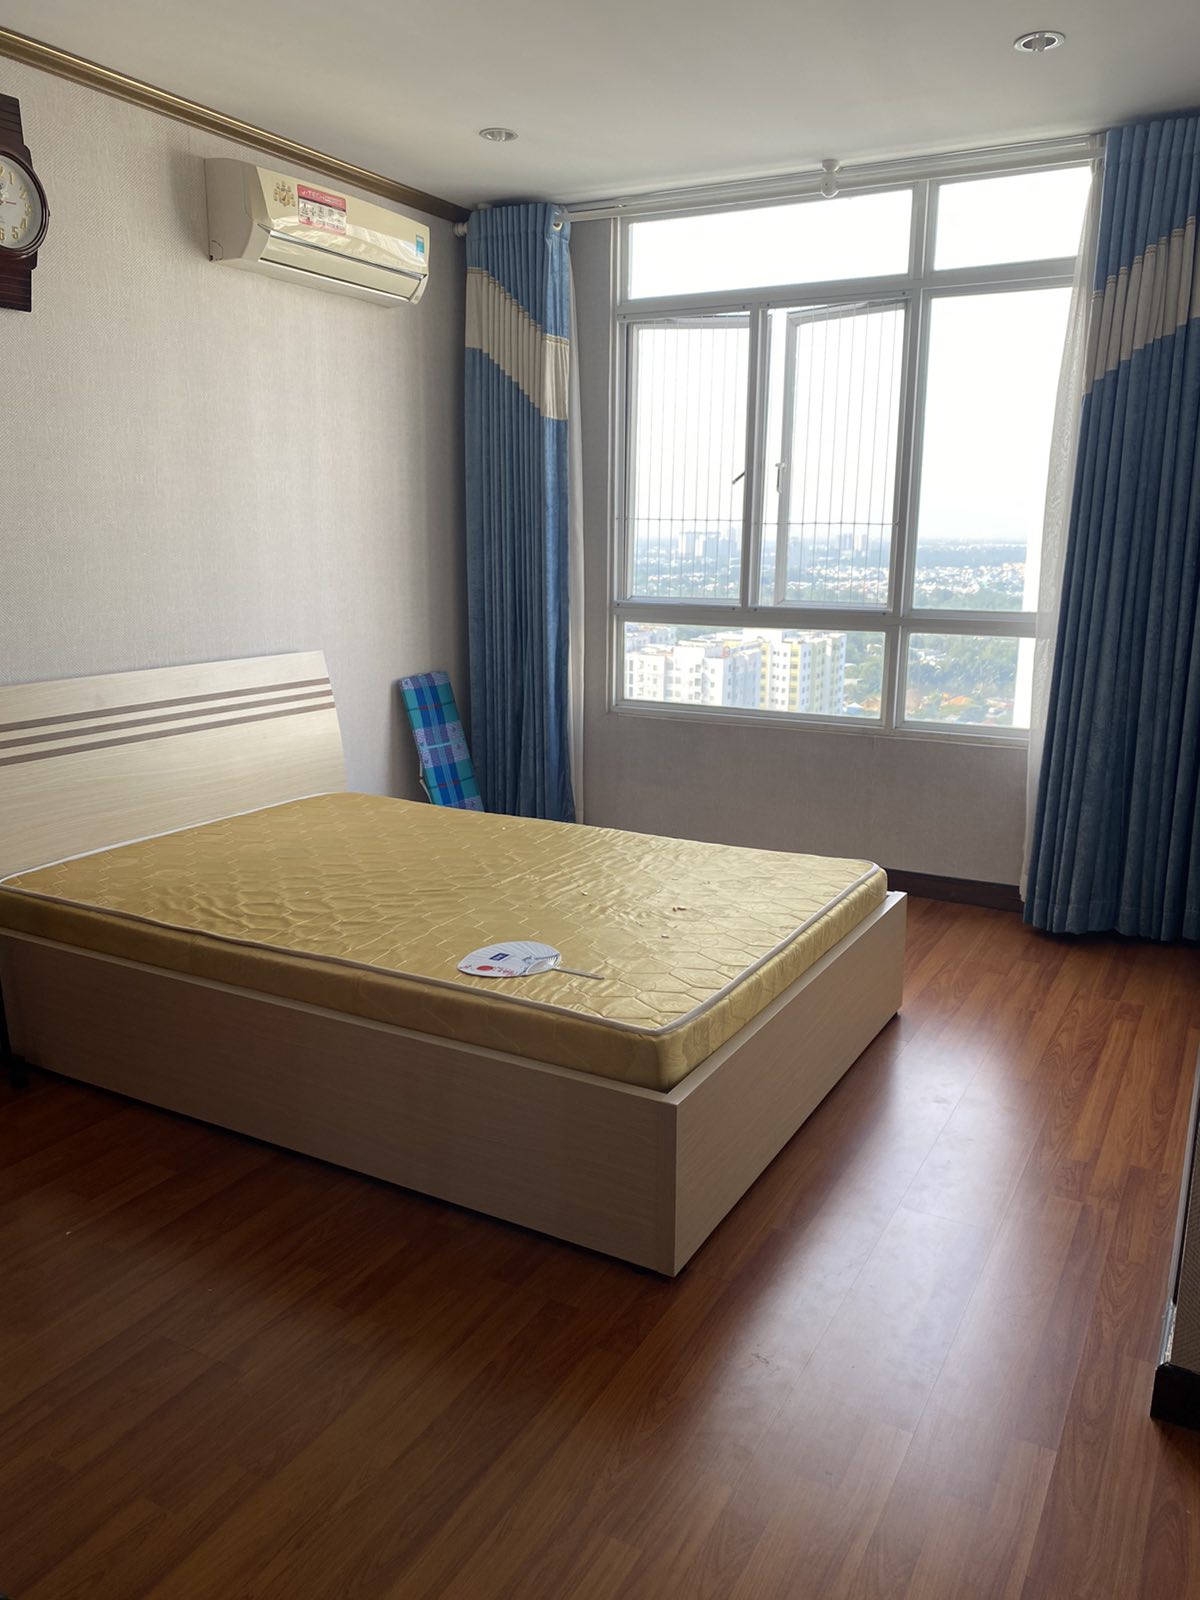 Trang bị nội thất đầy đủ nên cần cho thuê căn hộ Giai Việt q8 115m2 với 2 phòng ngủ giá 11 triệu